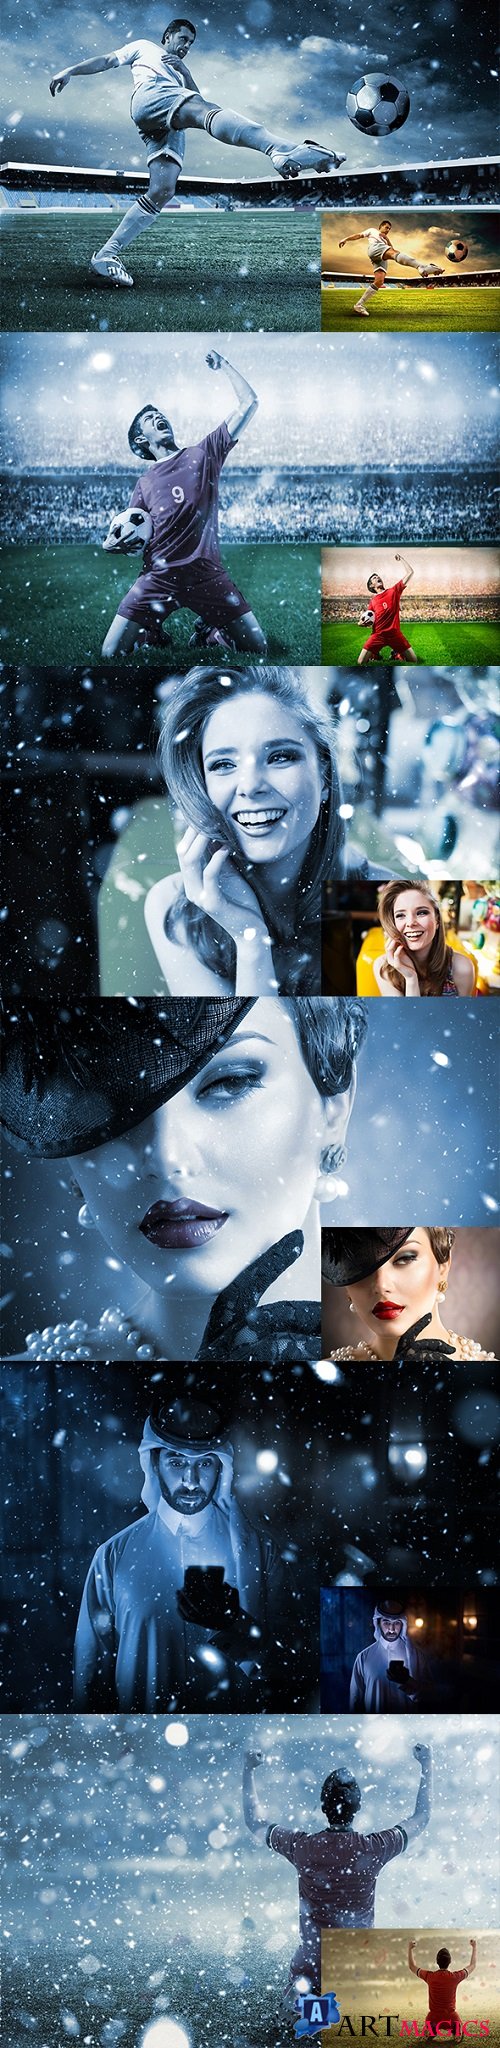 Let It Snow 2 Photoshop Action 20998966